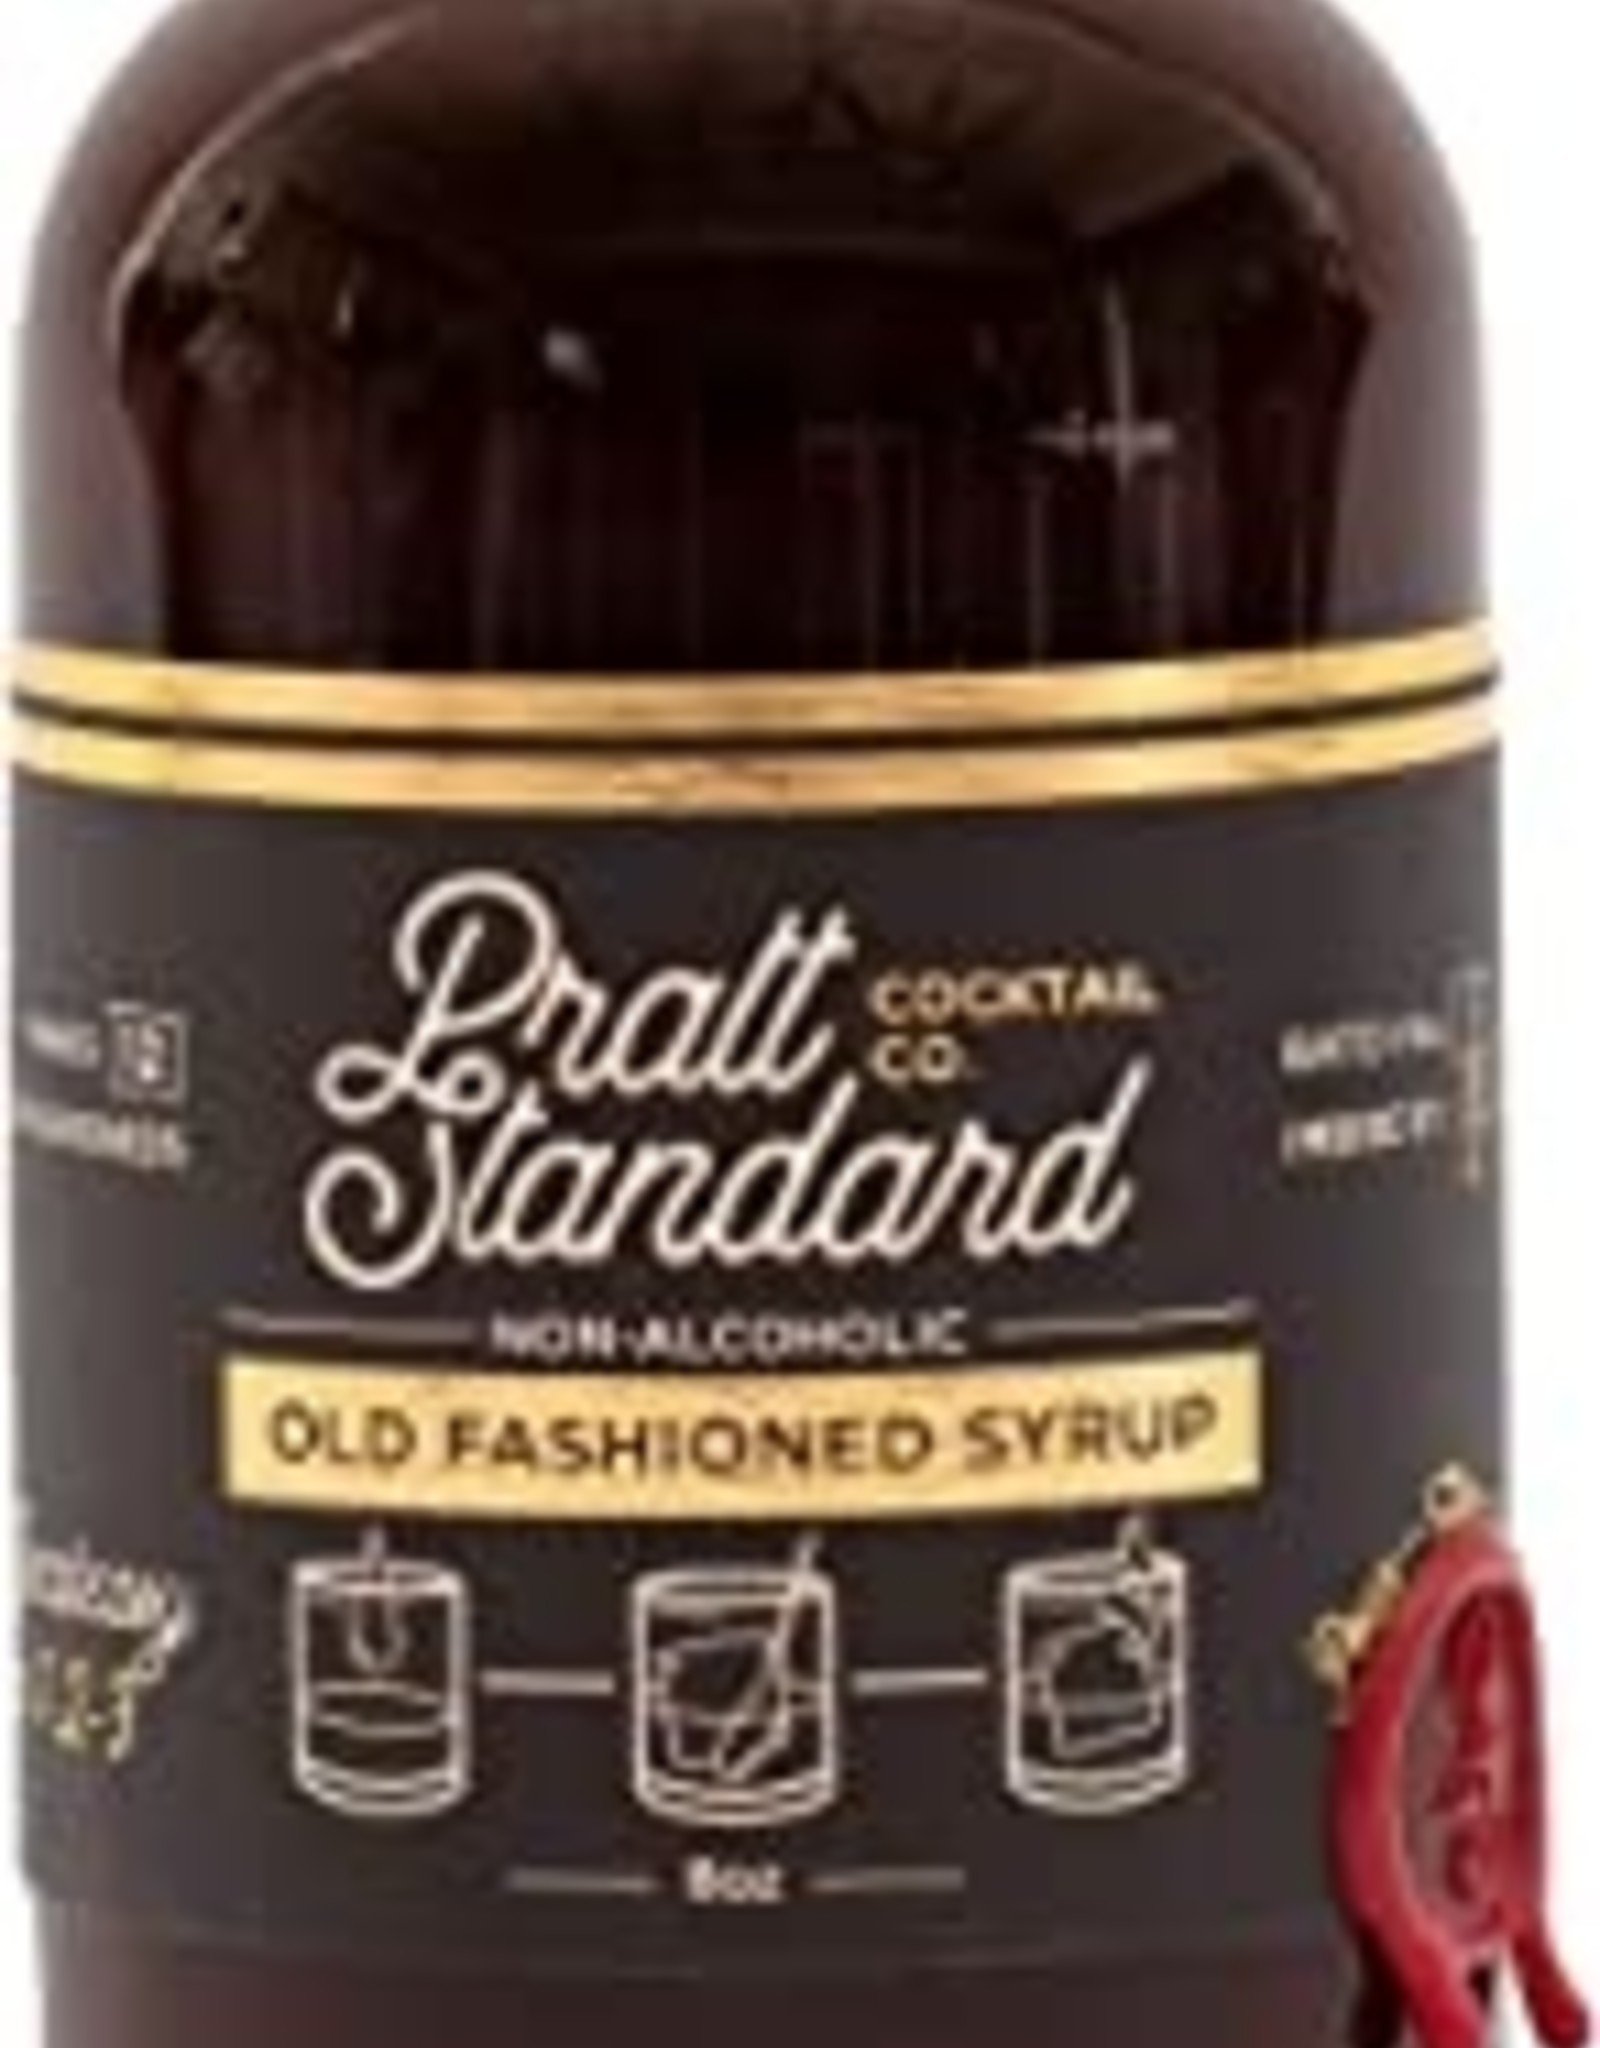 Pratt Old Fashioned Syrup